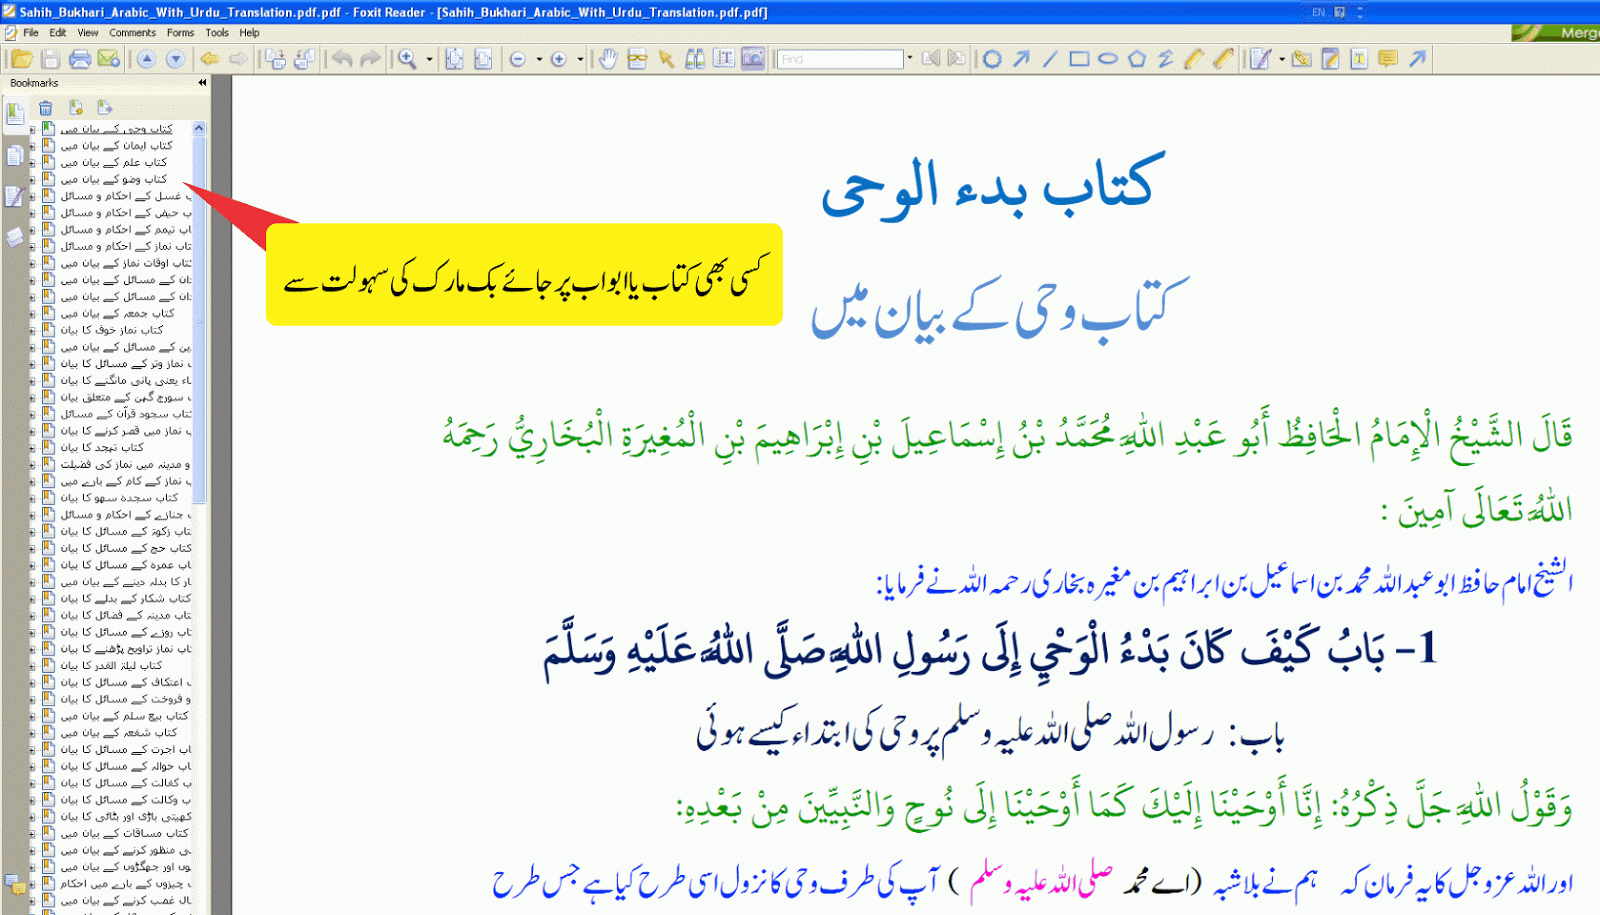 Sahih Bukhari Pdf Free Download